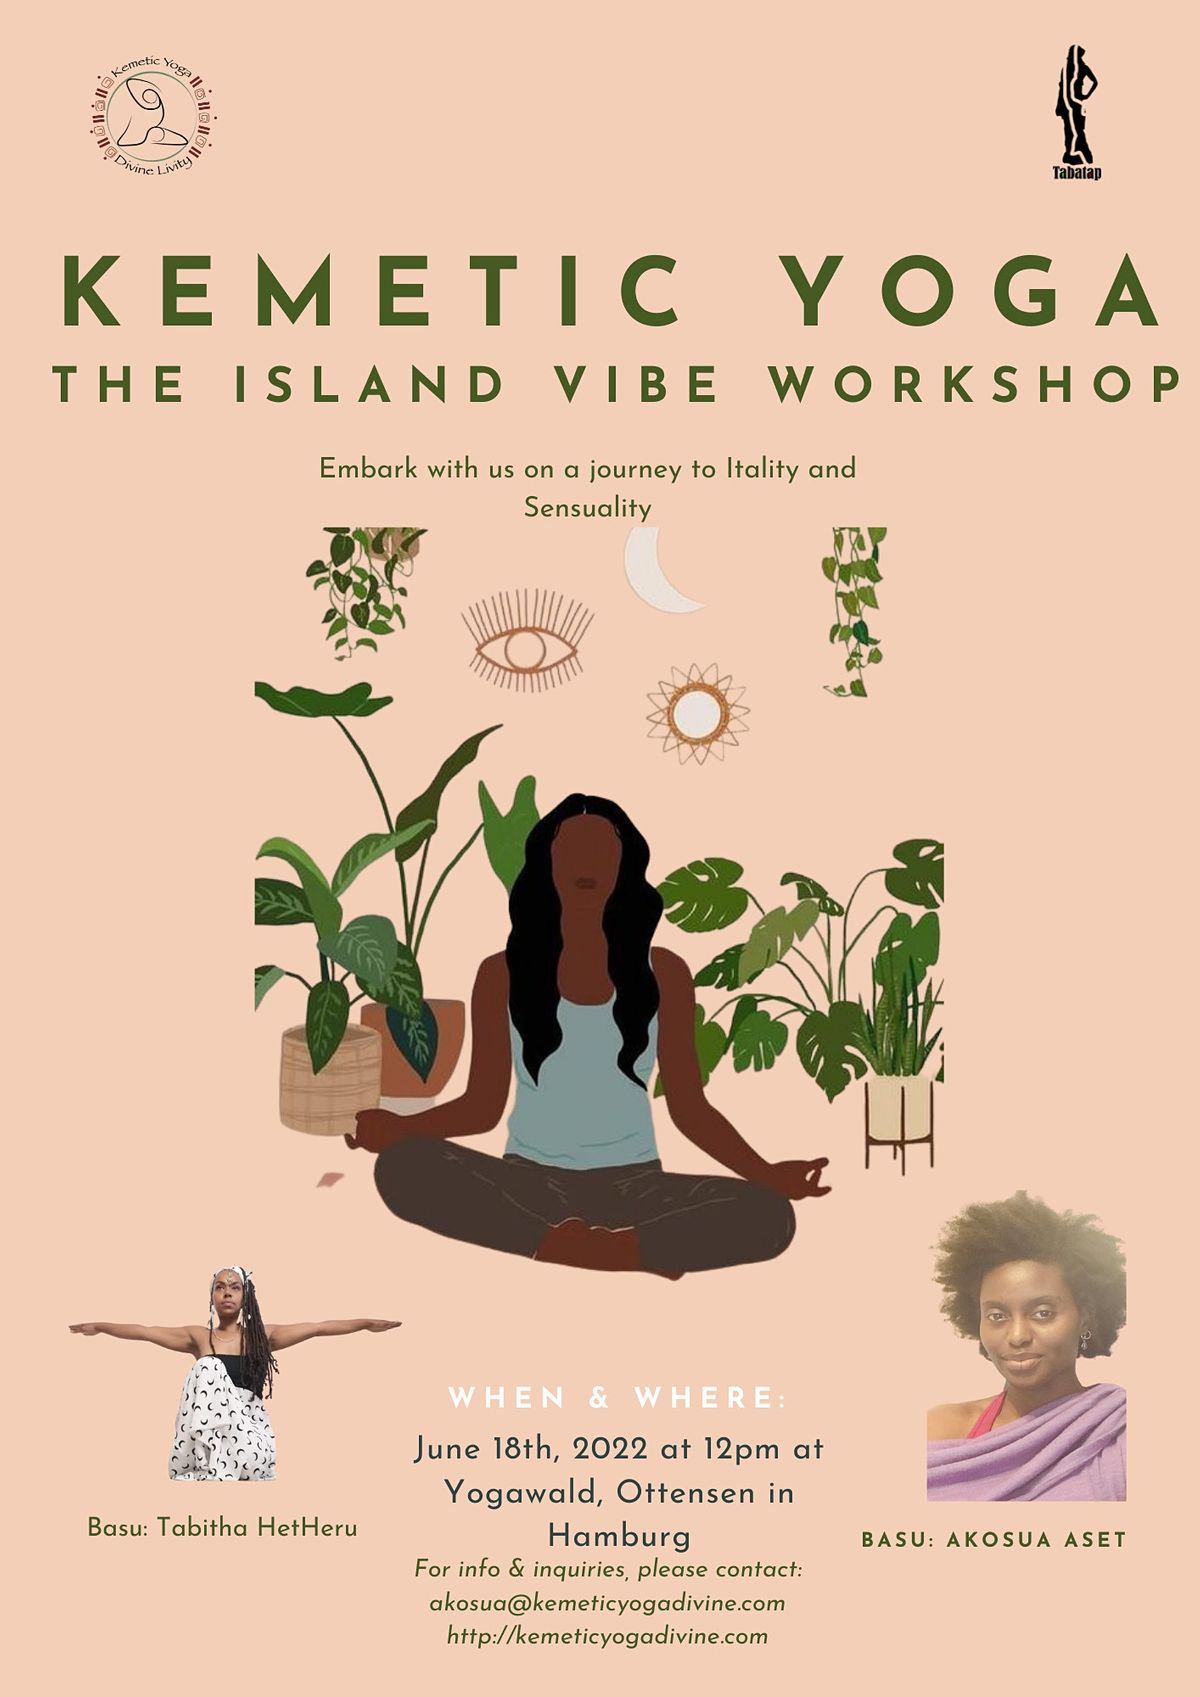 Kemetic Yoga - The Island Vibe Workshop